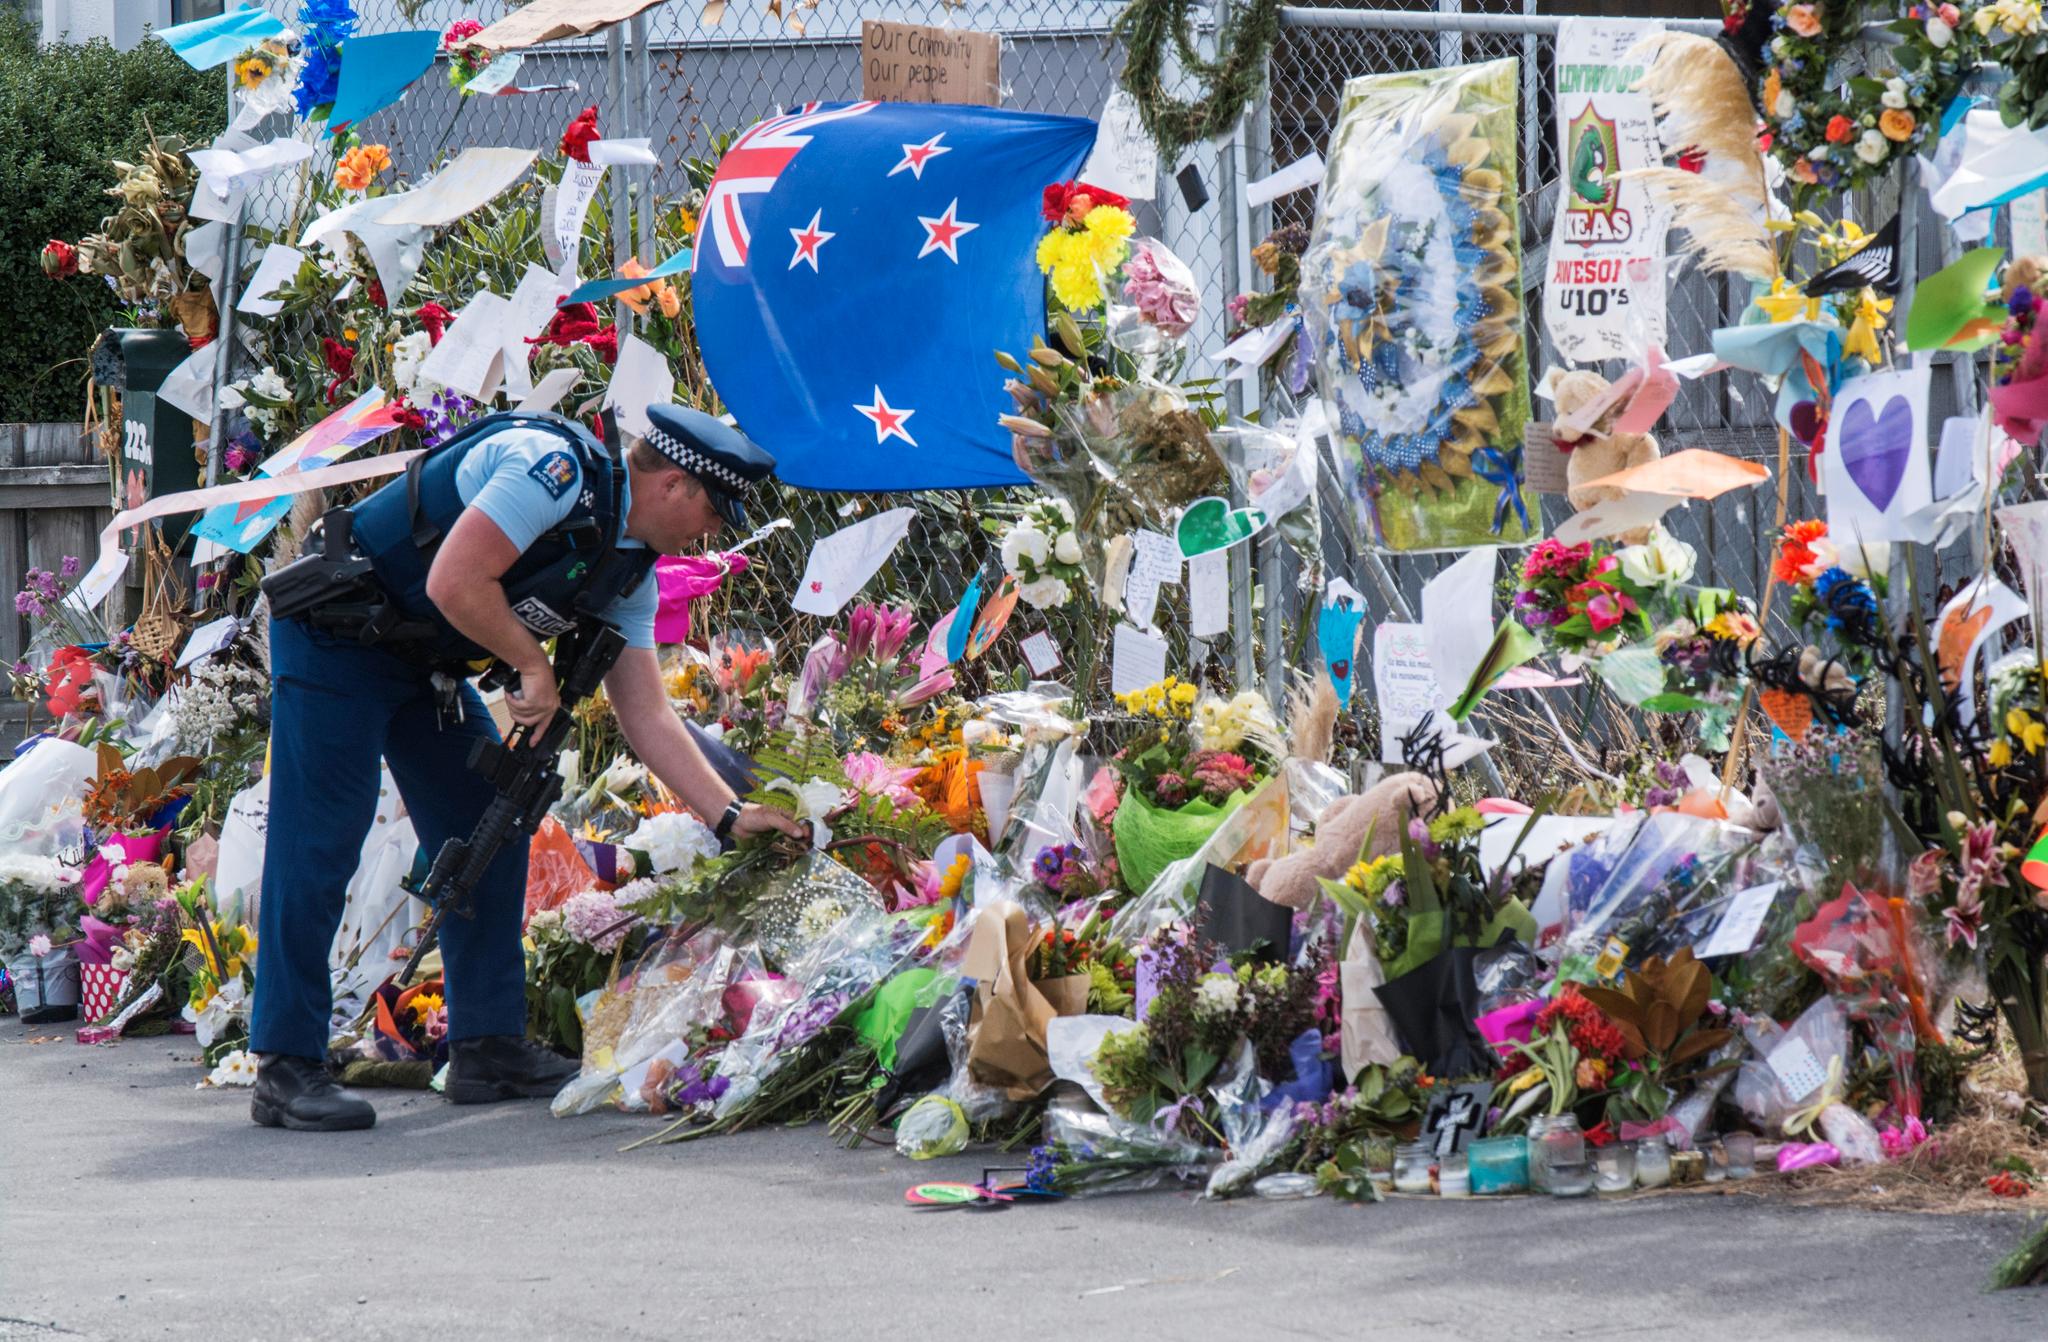 51 mennesker ble drept og like mange skadet i terrorangrepene i Christchurch 15. mars i år.